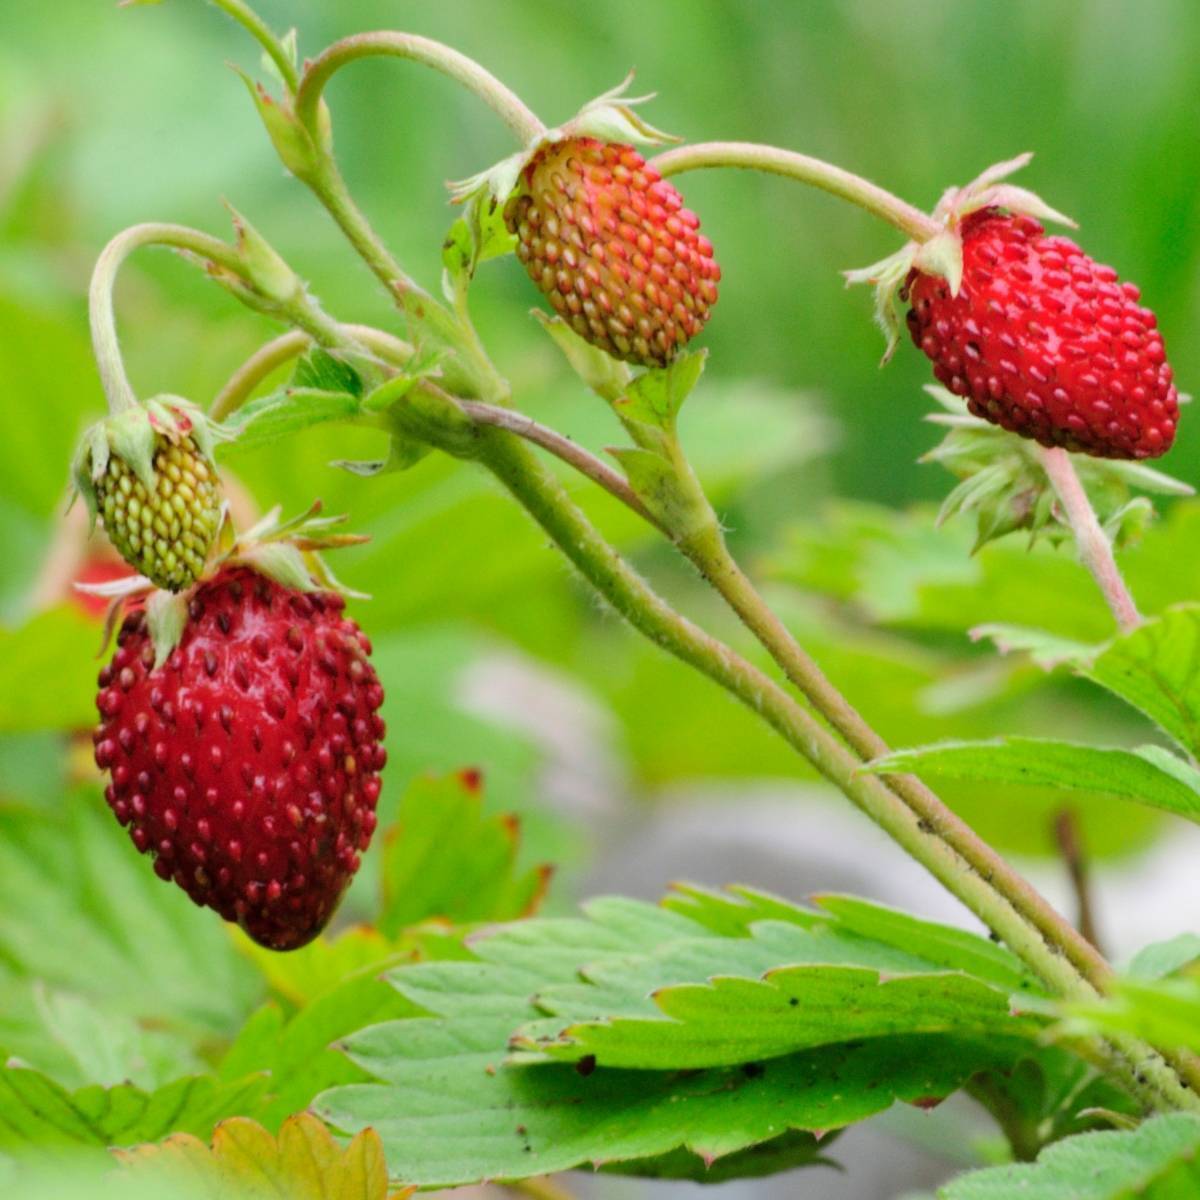 Mggsndi 100Pcs Sweet Wild Strawberry Seeds Non-GMO Fruit Easy Grow Plant for Home Garden Bonsai 